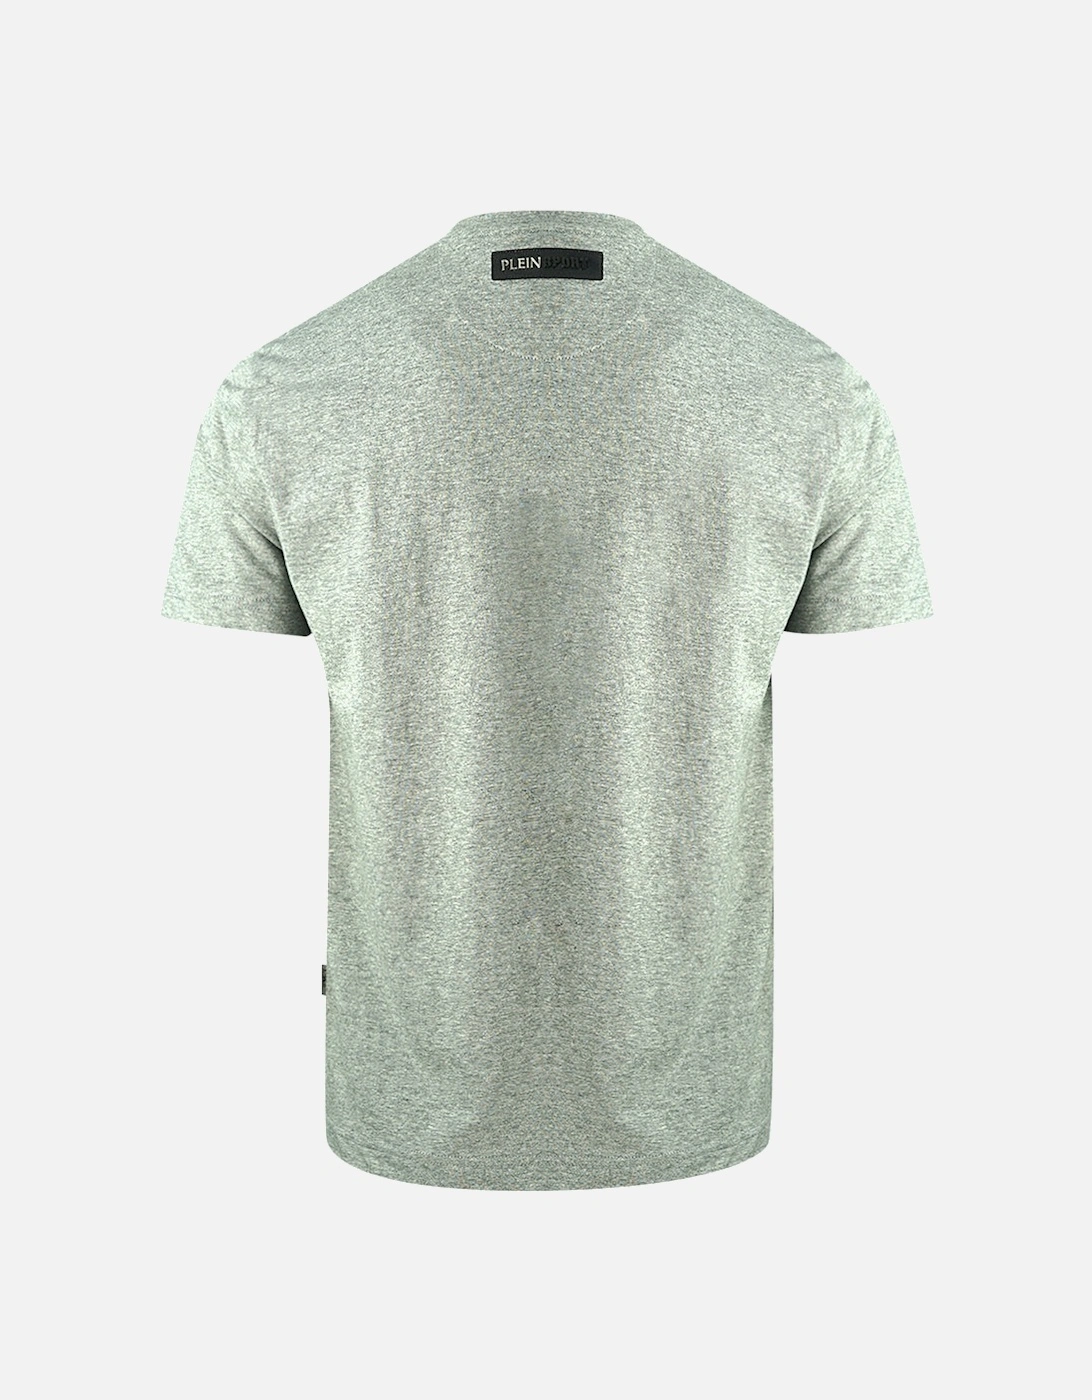 Plein Sport Tigerhead Bold Logo Grey T-Shirt